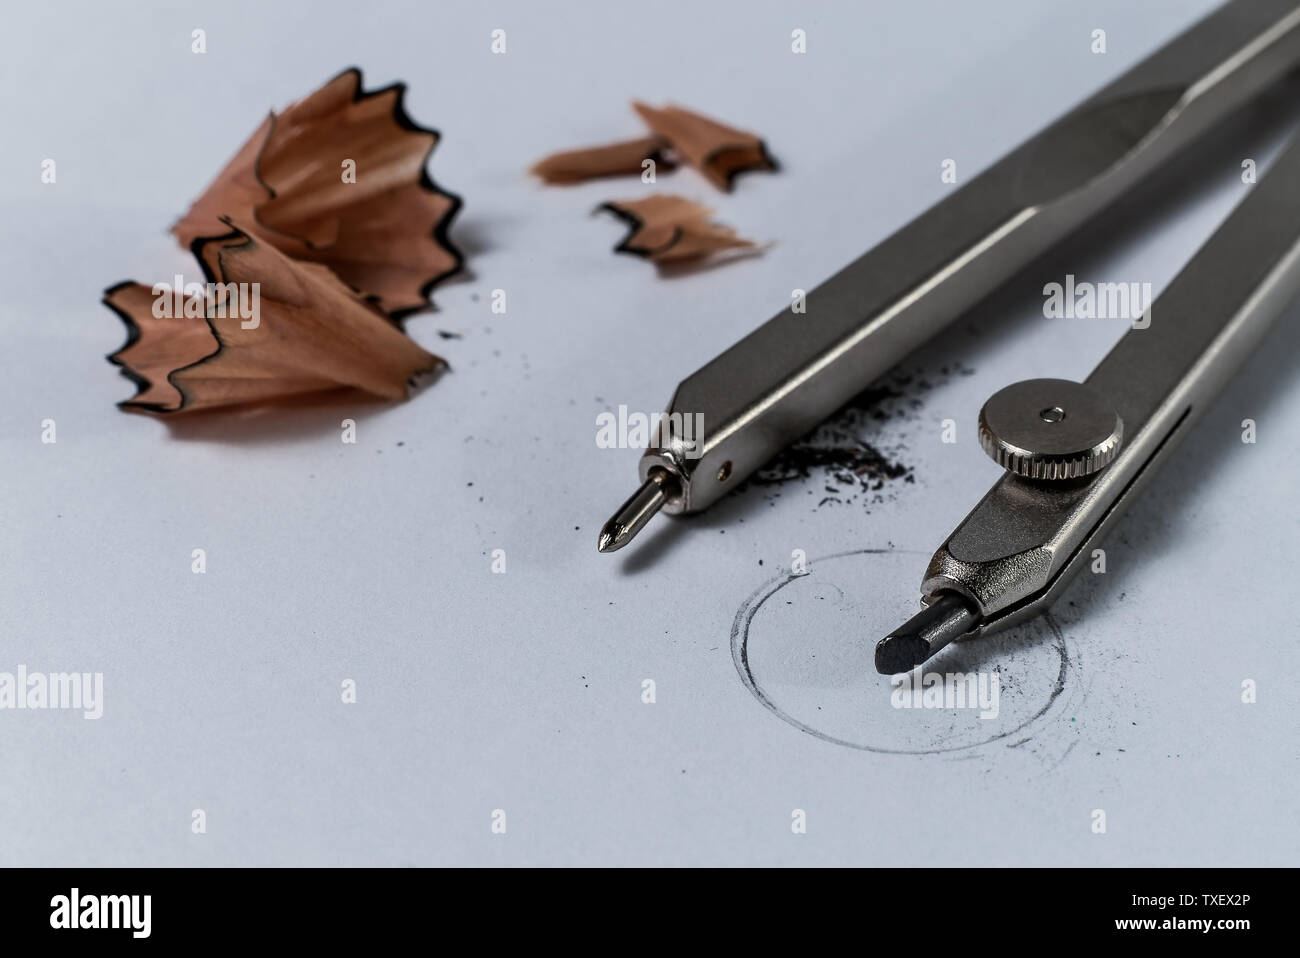 Macro closeup détail d'un crayon et un compas de géométrie copeaux affûtage crayon sur papier blanc avec un cercle dessiné - Concept de l'enseignement scolaire Banque D'Images